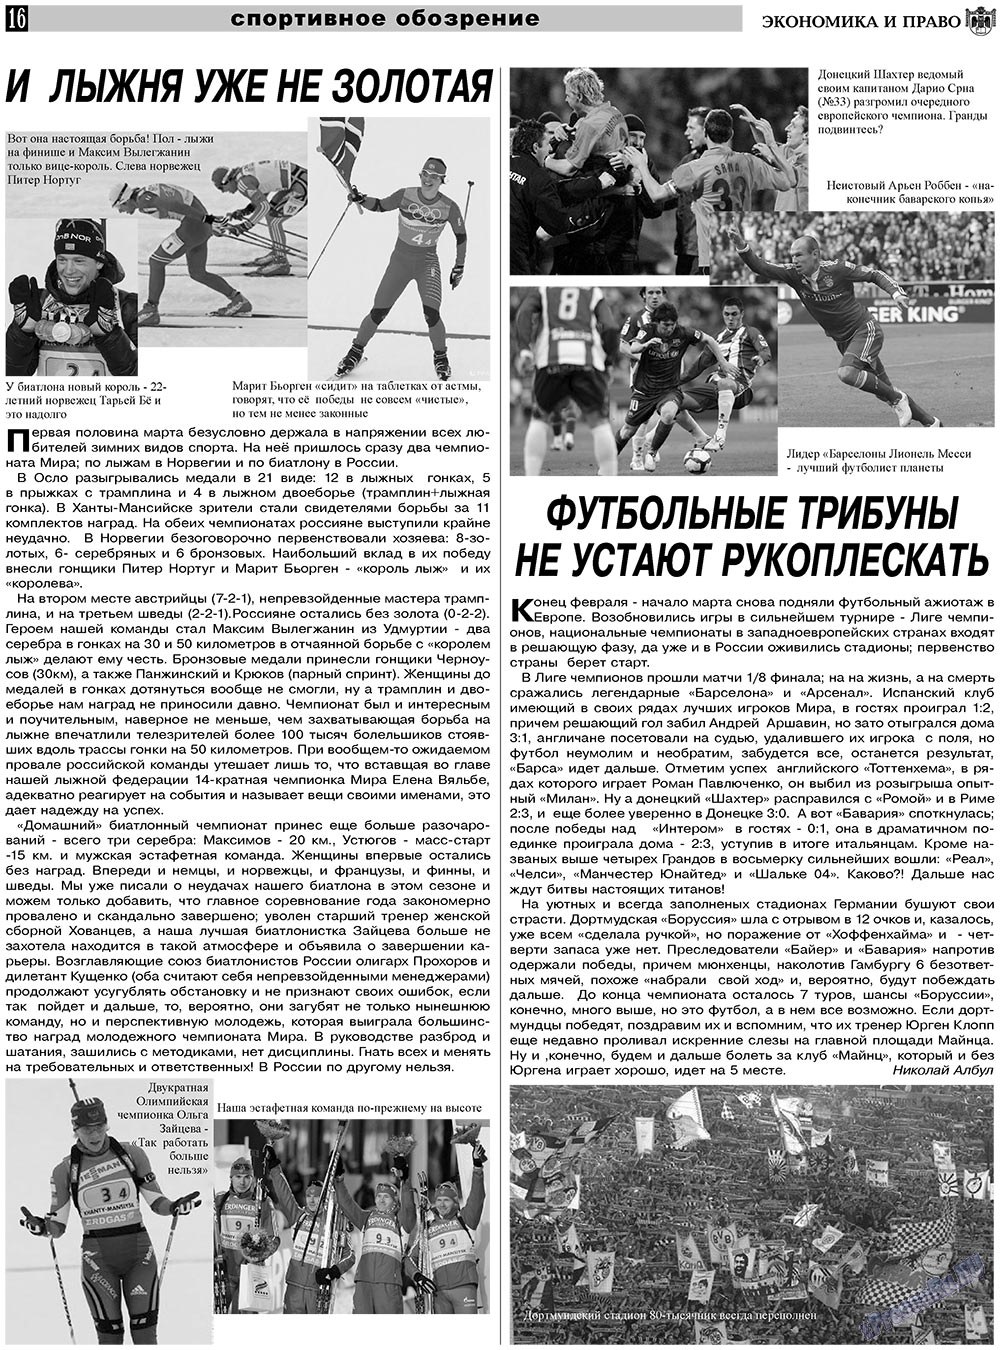 Экономика и право, газета. 2011 №4 стр.16